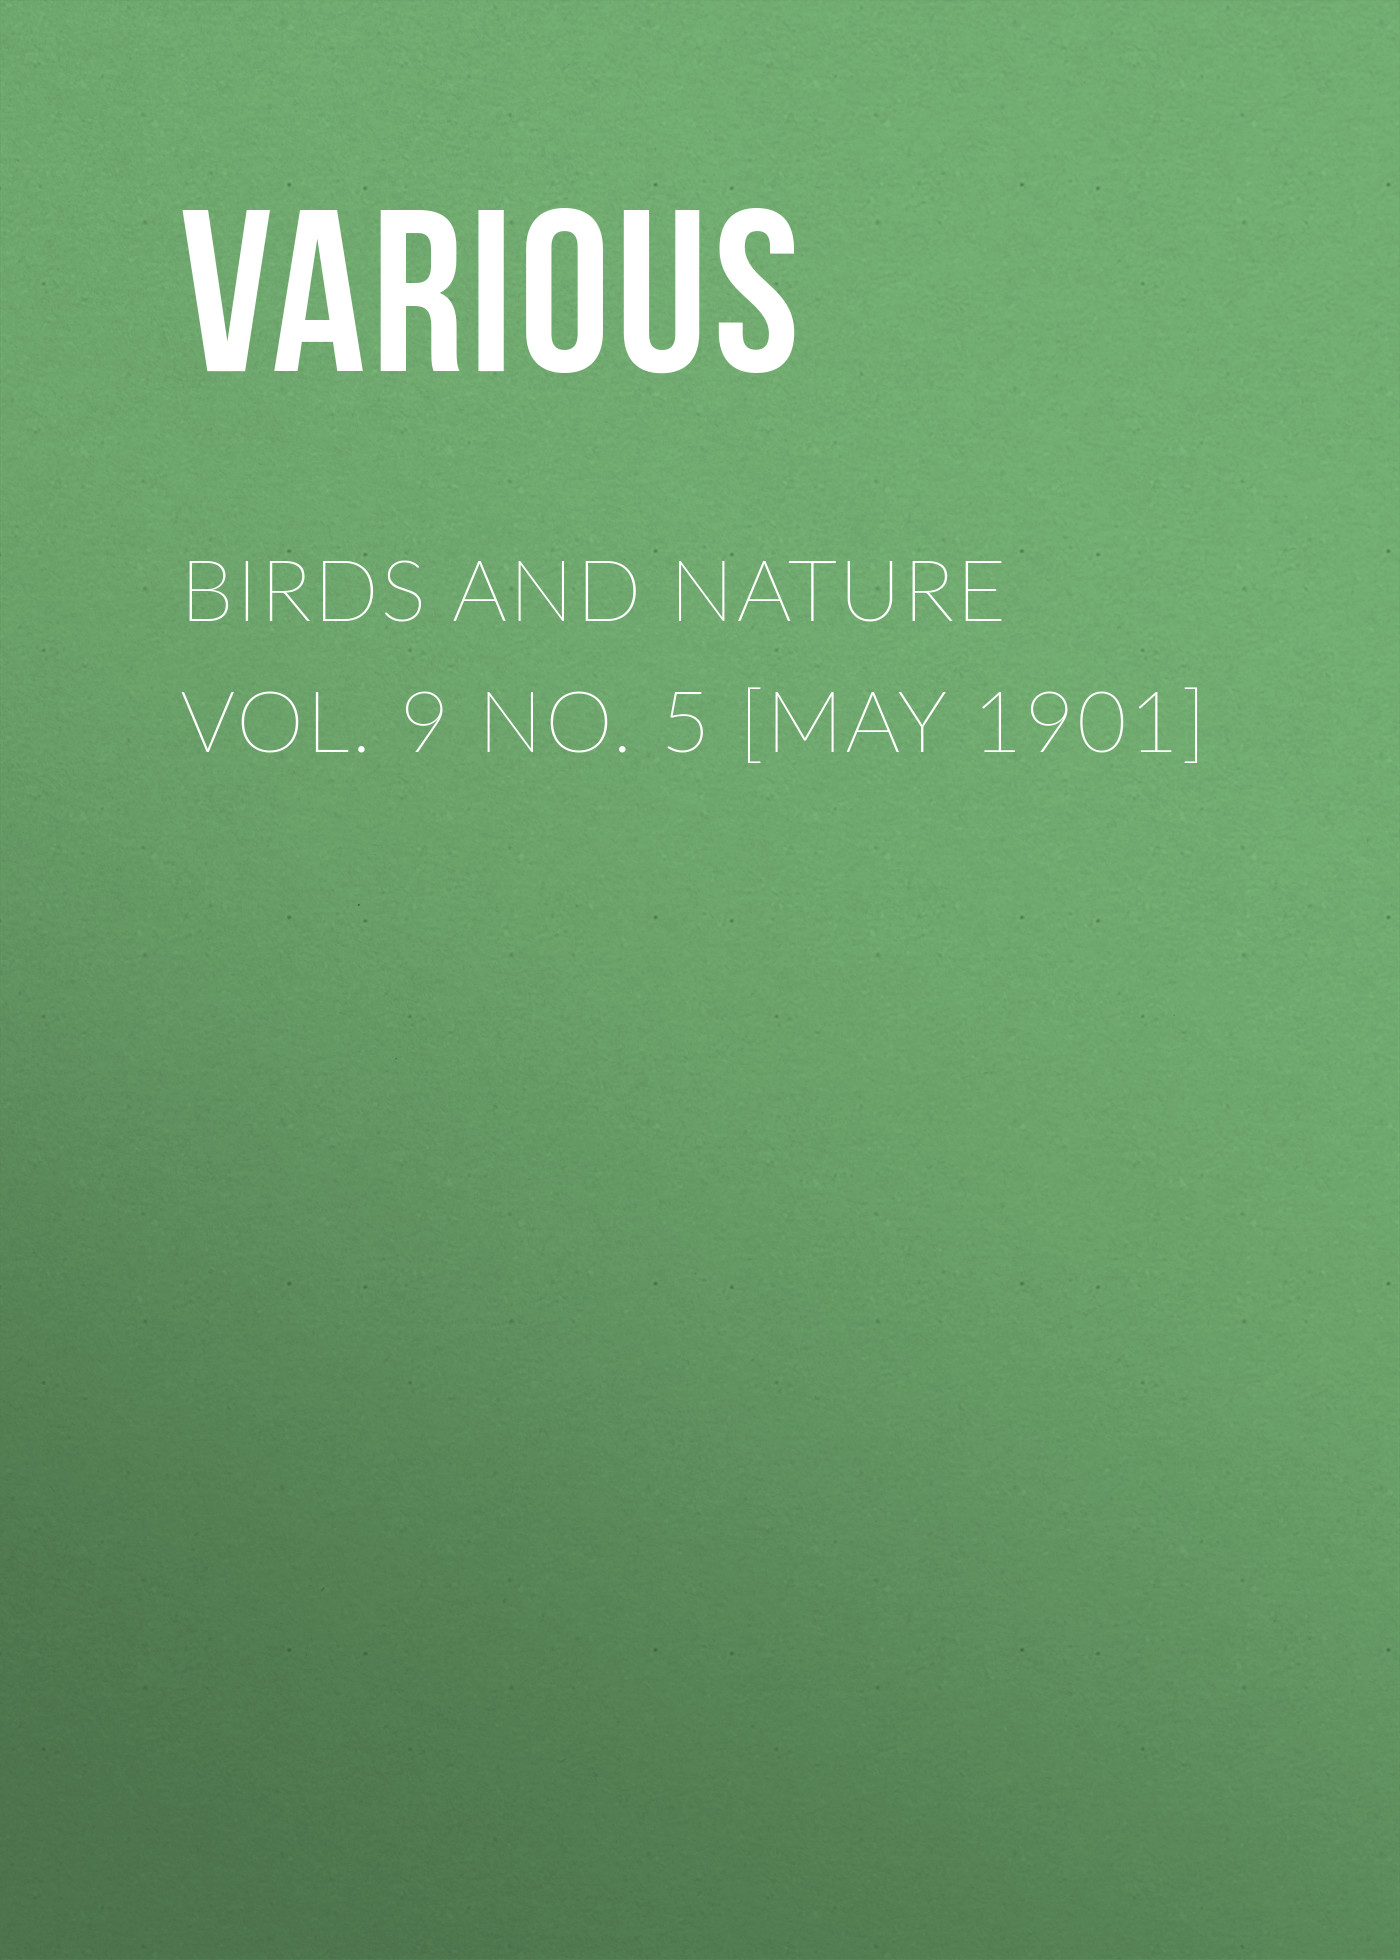 Книга Birds and Nature Vol. 9 No. 5 [May 1901] из серии , созданная  Various, может относится к жанру Журналы, Биология, Природа и животные, Зарубежная образовательная литература. Стоимость электронной книги Birds and Nature Vol. 9 No. 5 [May 1901] с идентификатором 25570815 составляет 0 руб.